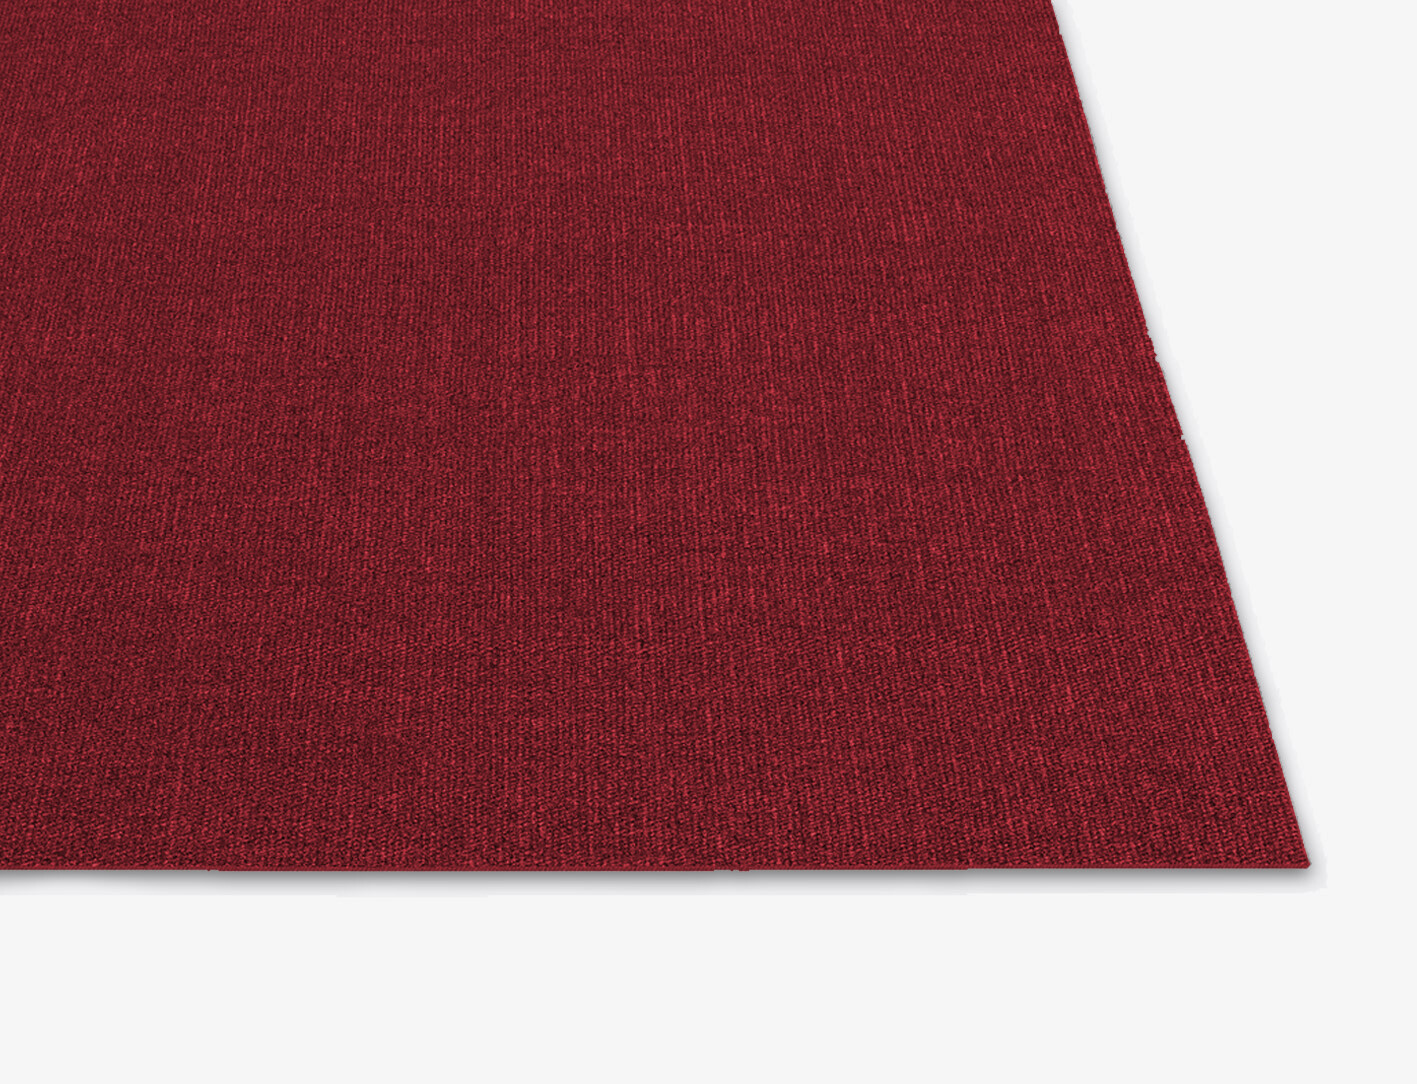 RA-AP01 Solid Colors Square Flatweave New Zealand Wool Custom Rug by Rug Artisan